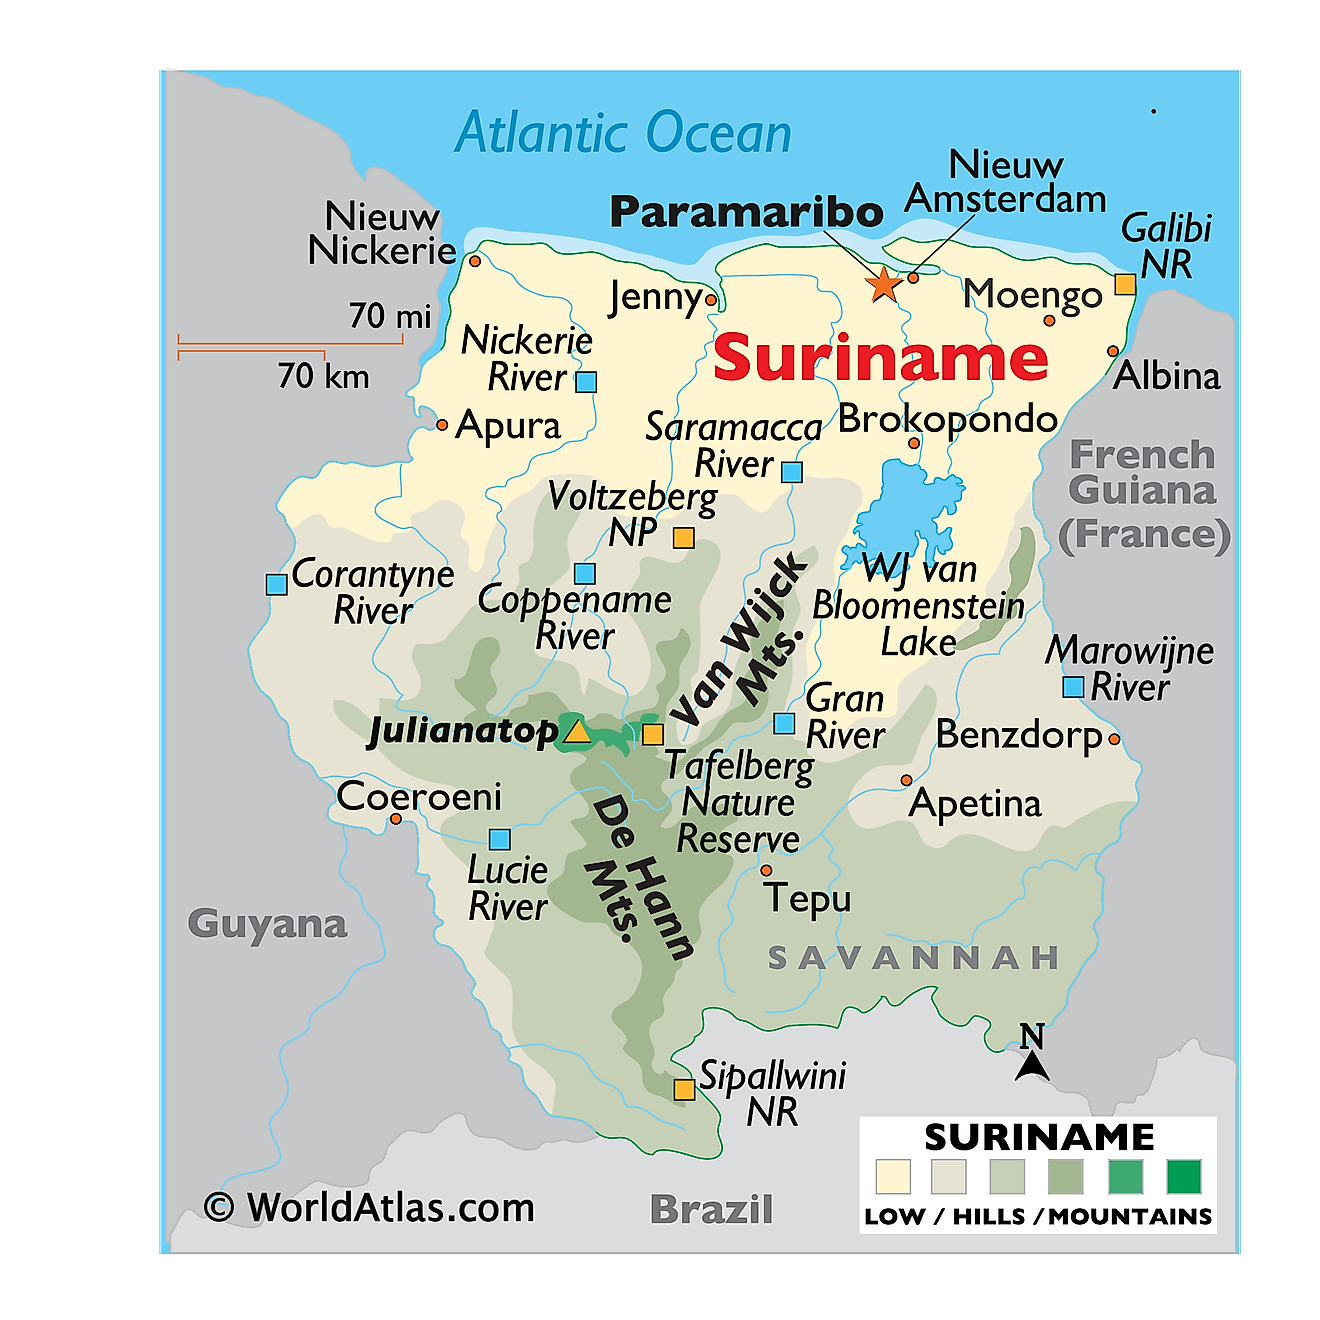 Mapa físico de Surinam que muestra el relieve, las cadenas montañosas, el lago WJ van Bloomenstein, ríos importantes, áreas protegidas y más.